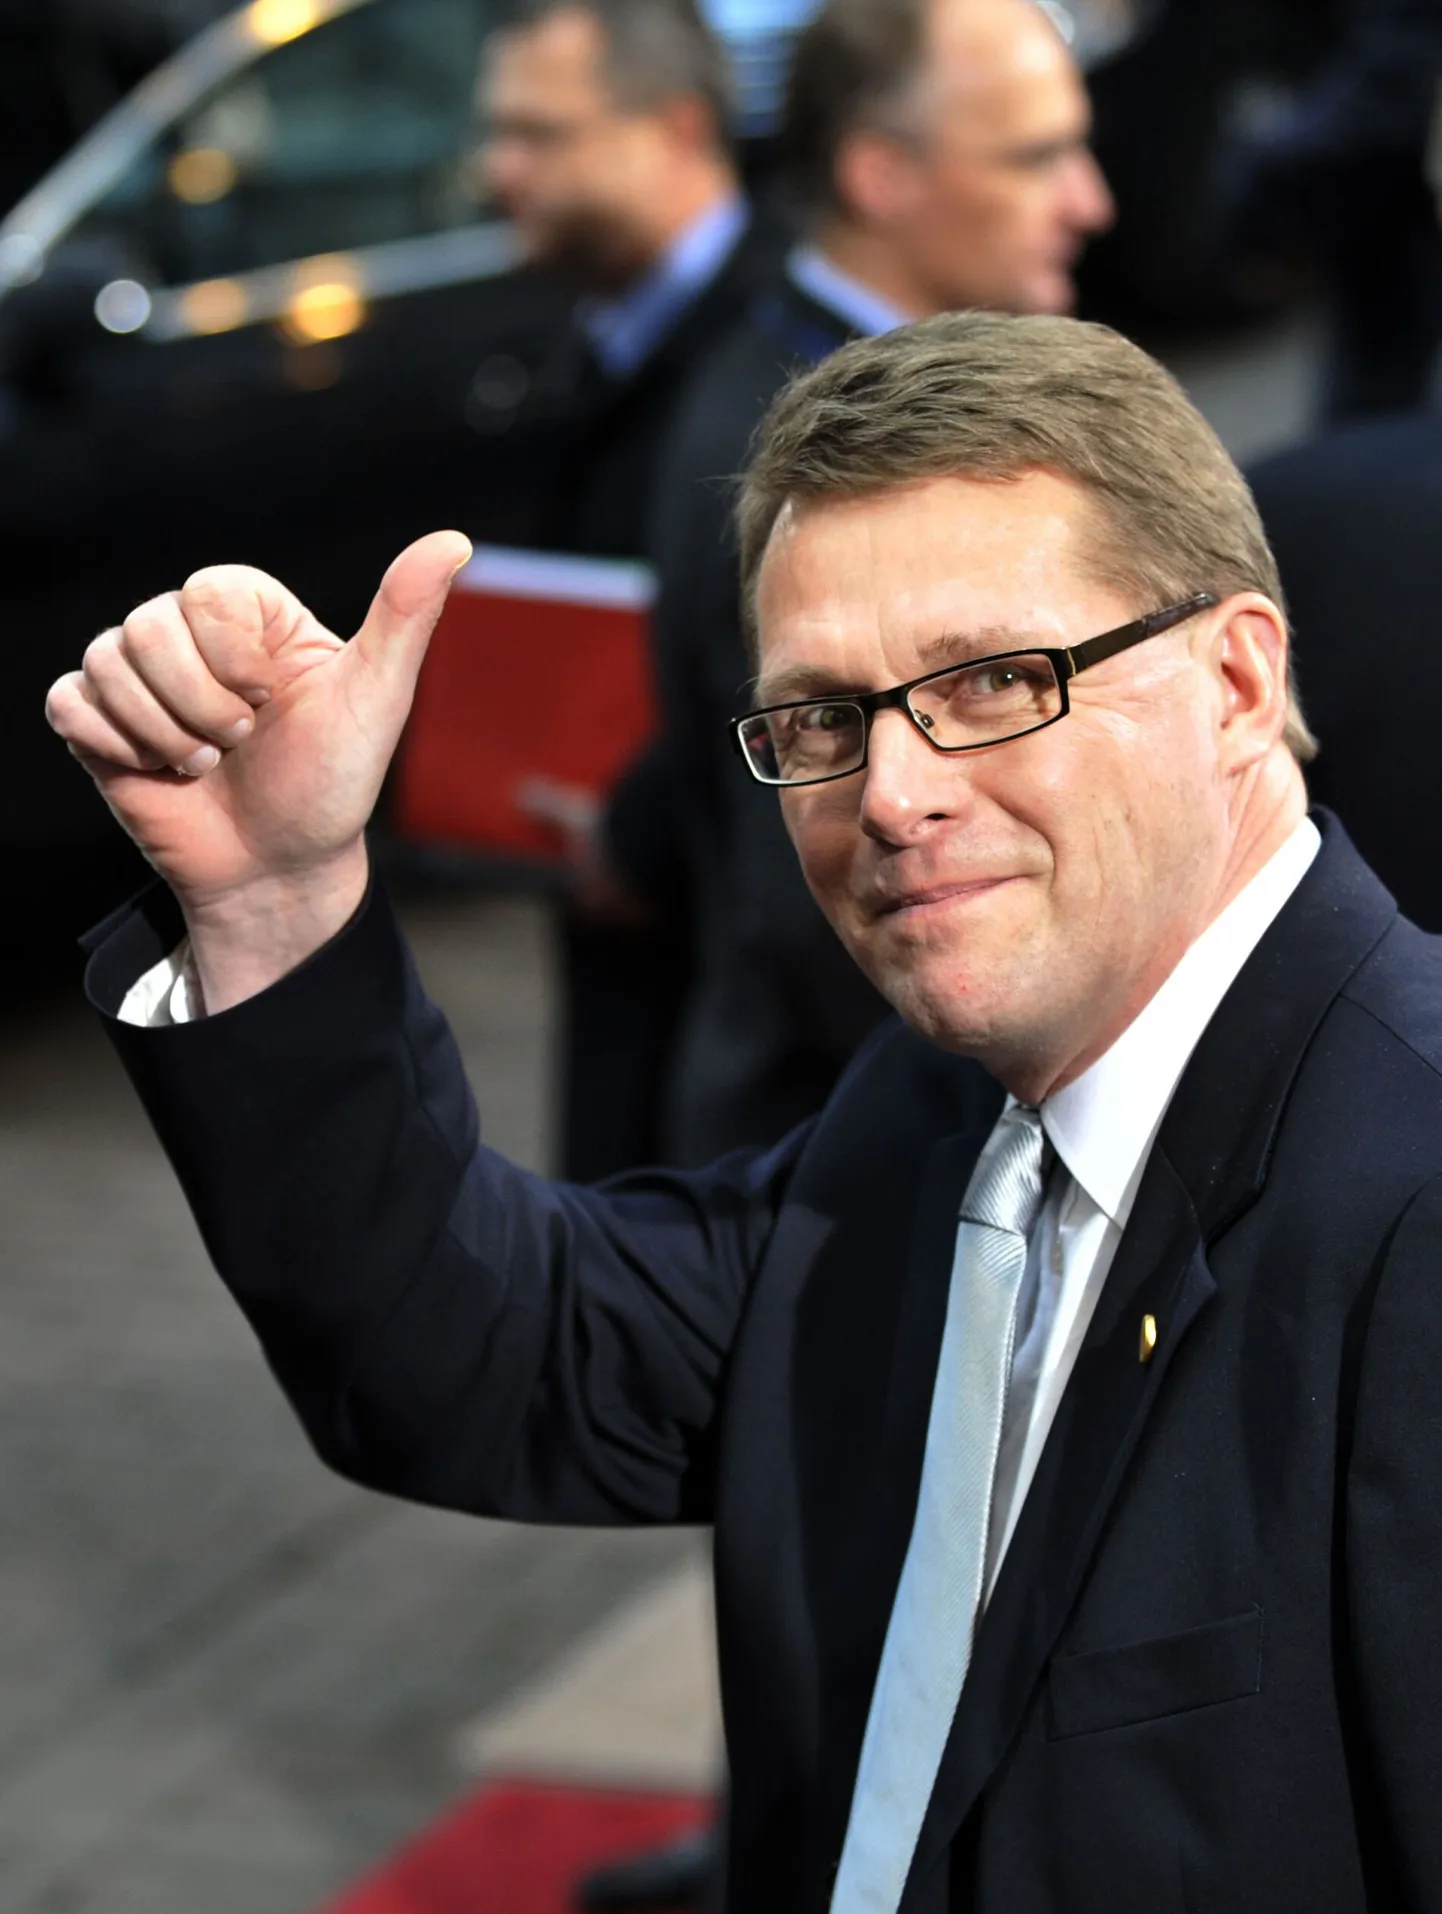 Soome peaminister Matti Vanhanen